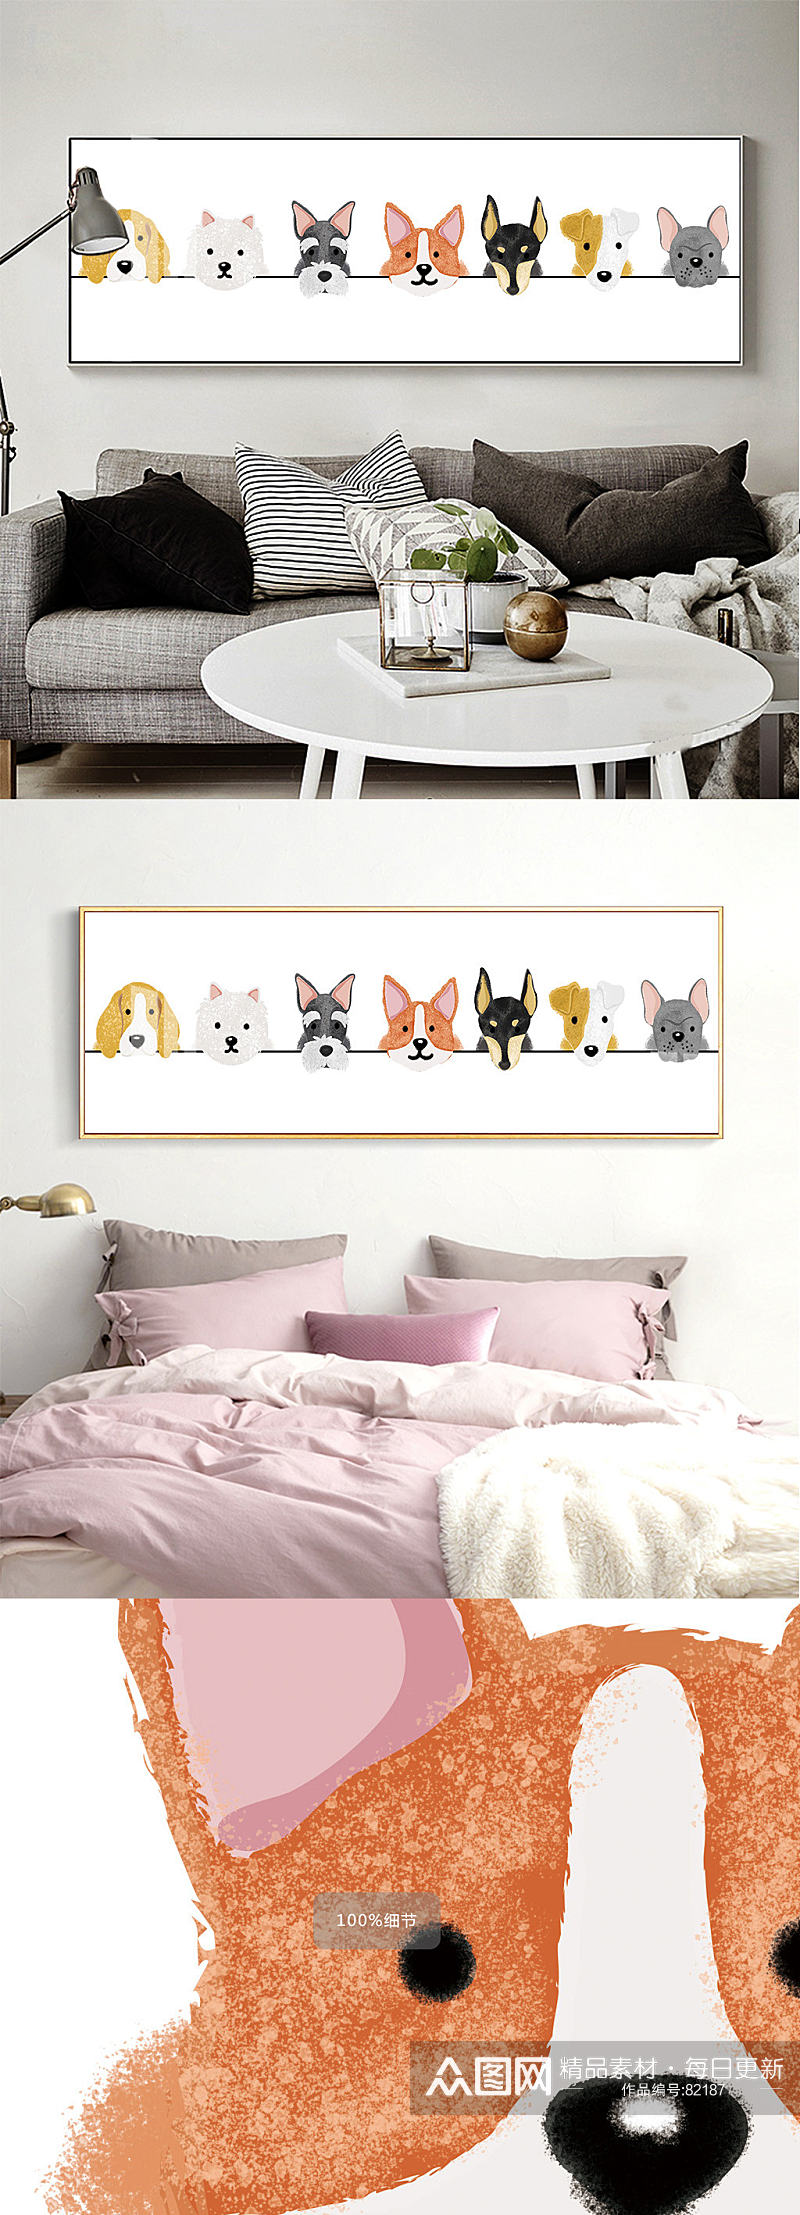 高清单幅卡通动物头像床头儿童房装饰画素材